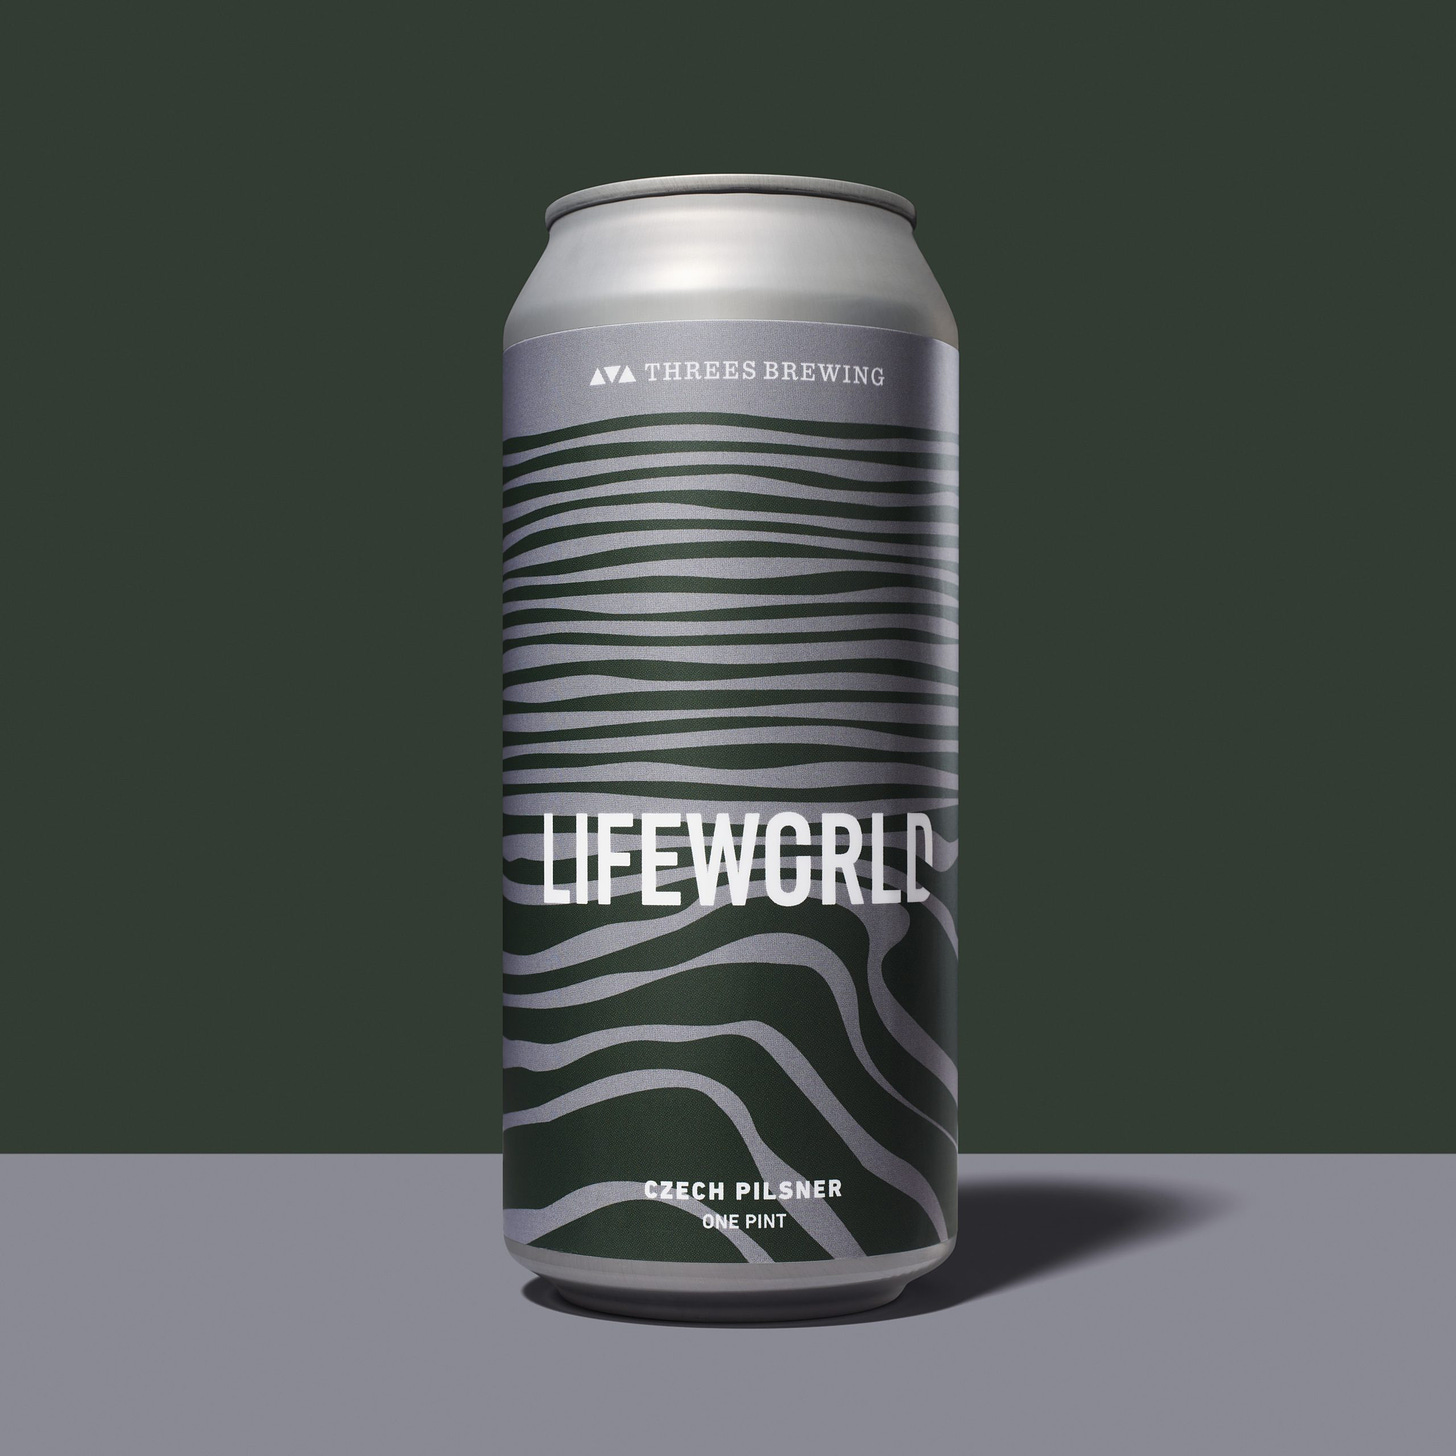 Threes Brewing Releases Lifeworld Czech Pilsner | Brewbound